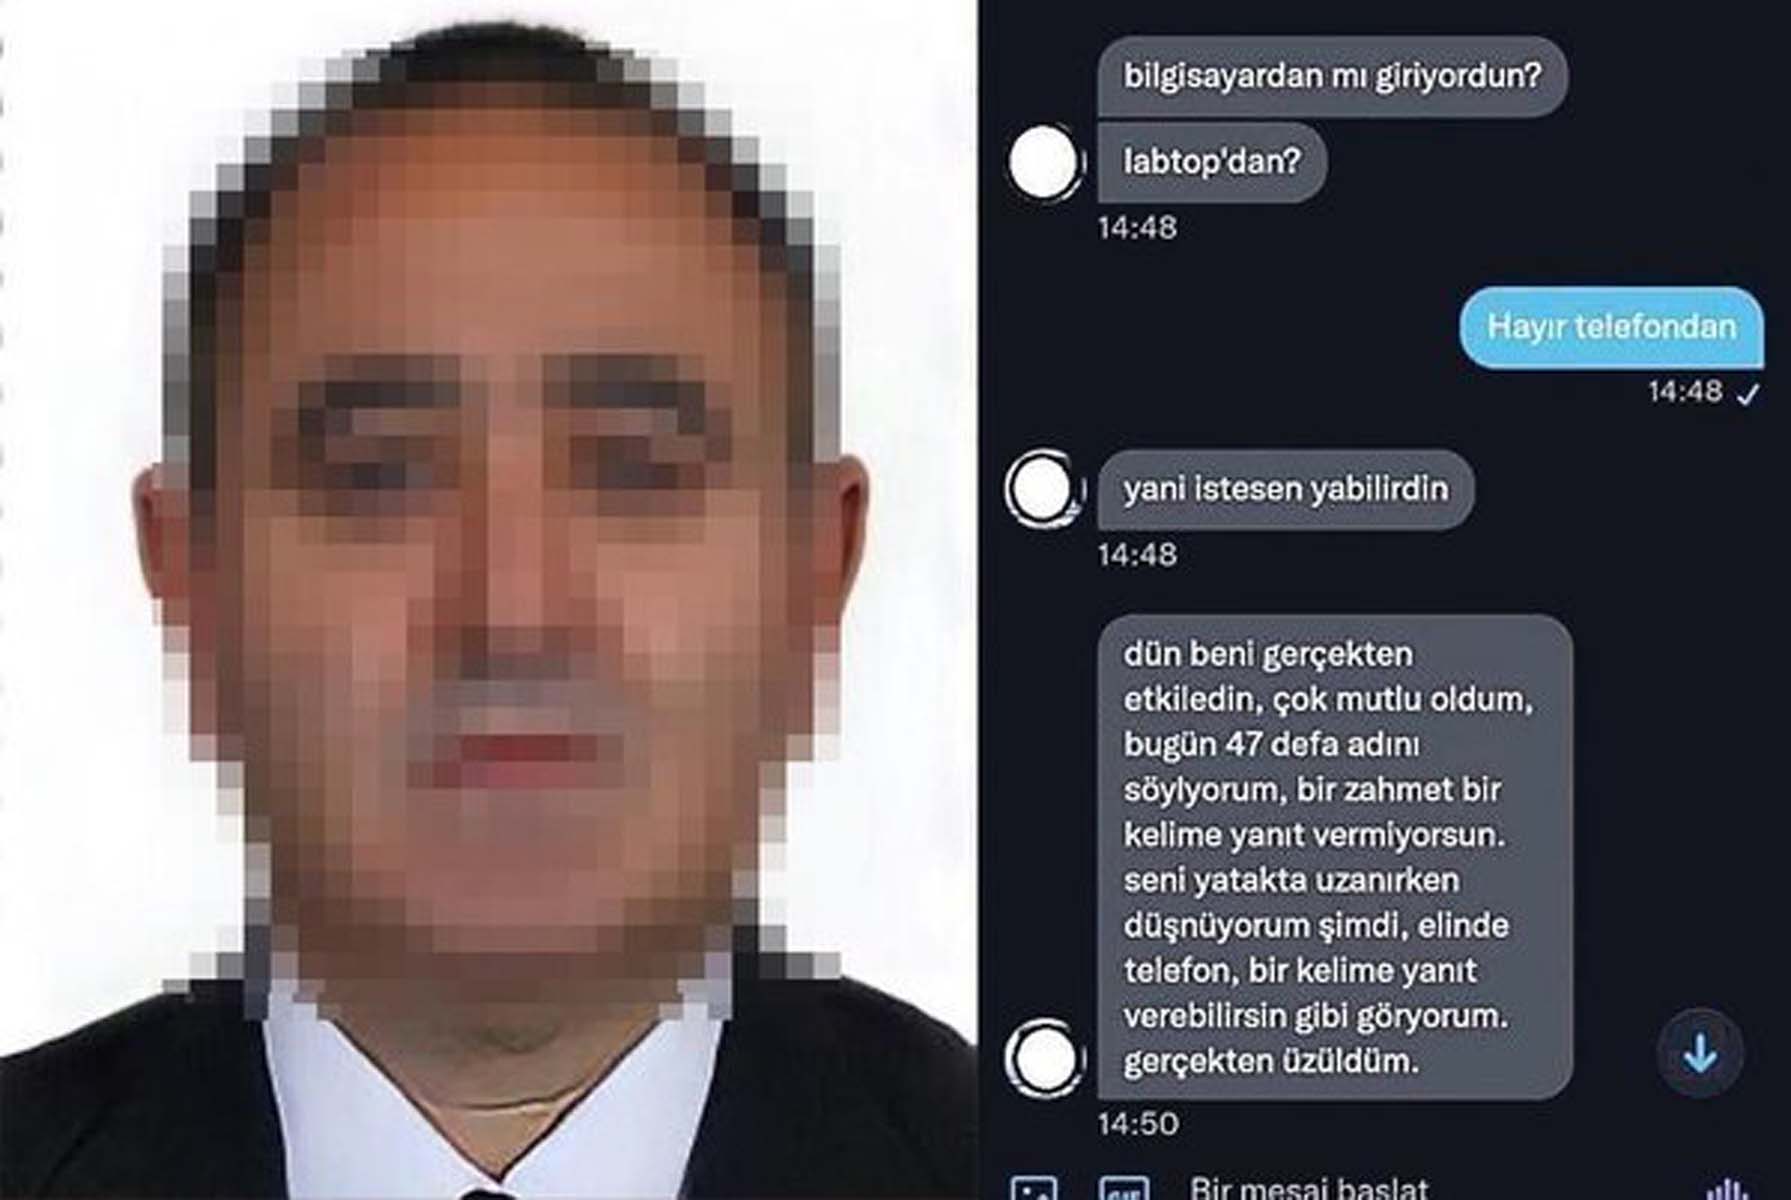 Kırıkkale Üniversitesi'nde tacizci profesör skandalı! İğrenç mesajlar tek tek ortaya çıkınca soruşturma başlatıldı 